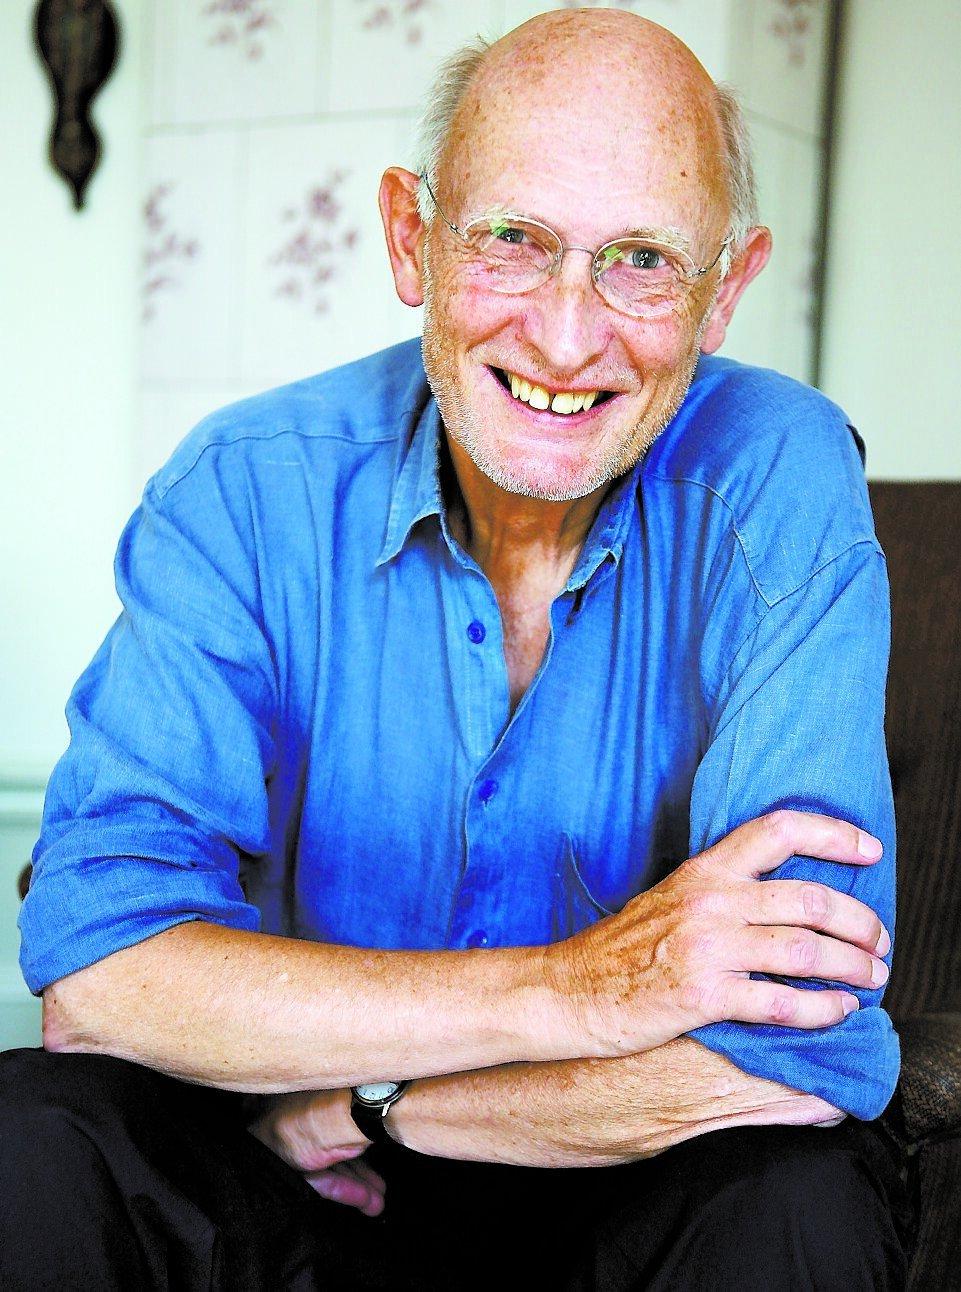 dialektpolis PC Jersild, 73 och författare, tycker att radio och tv ska befrias från skånska. ”Det går att träna sin dialekt”, säger han.